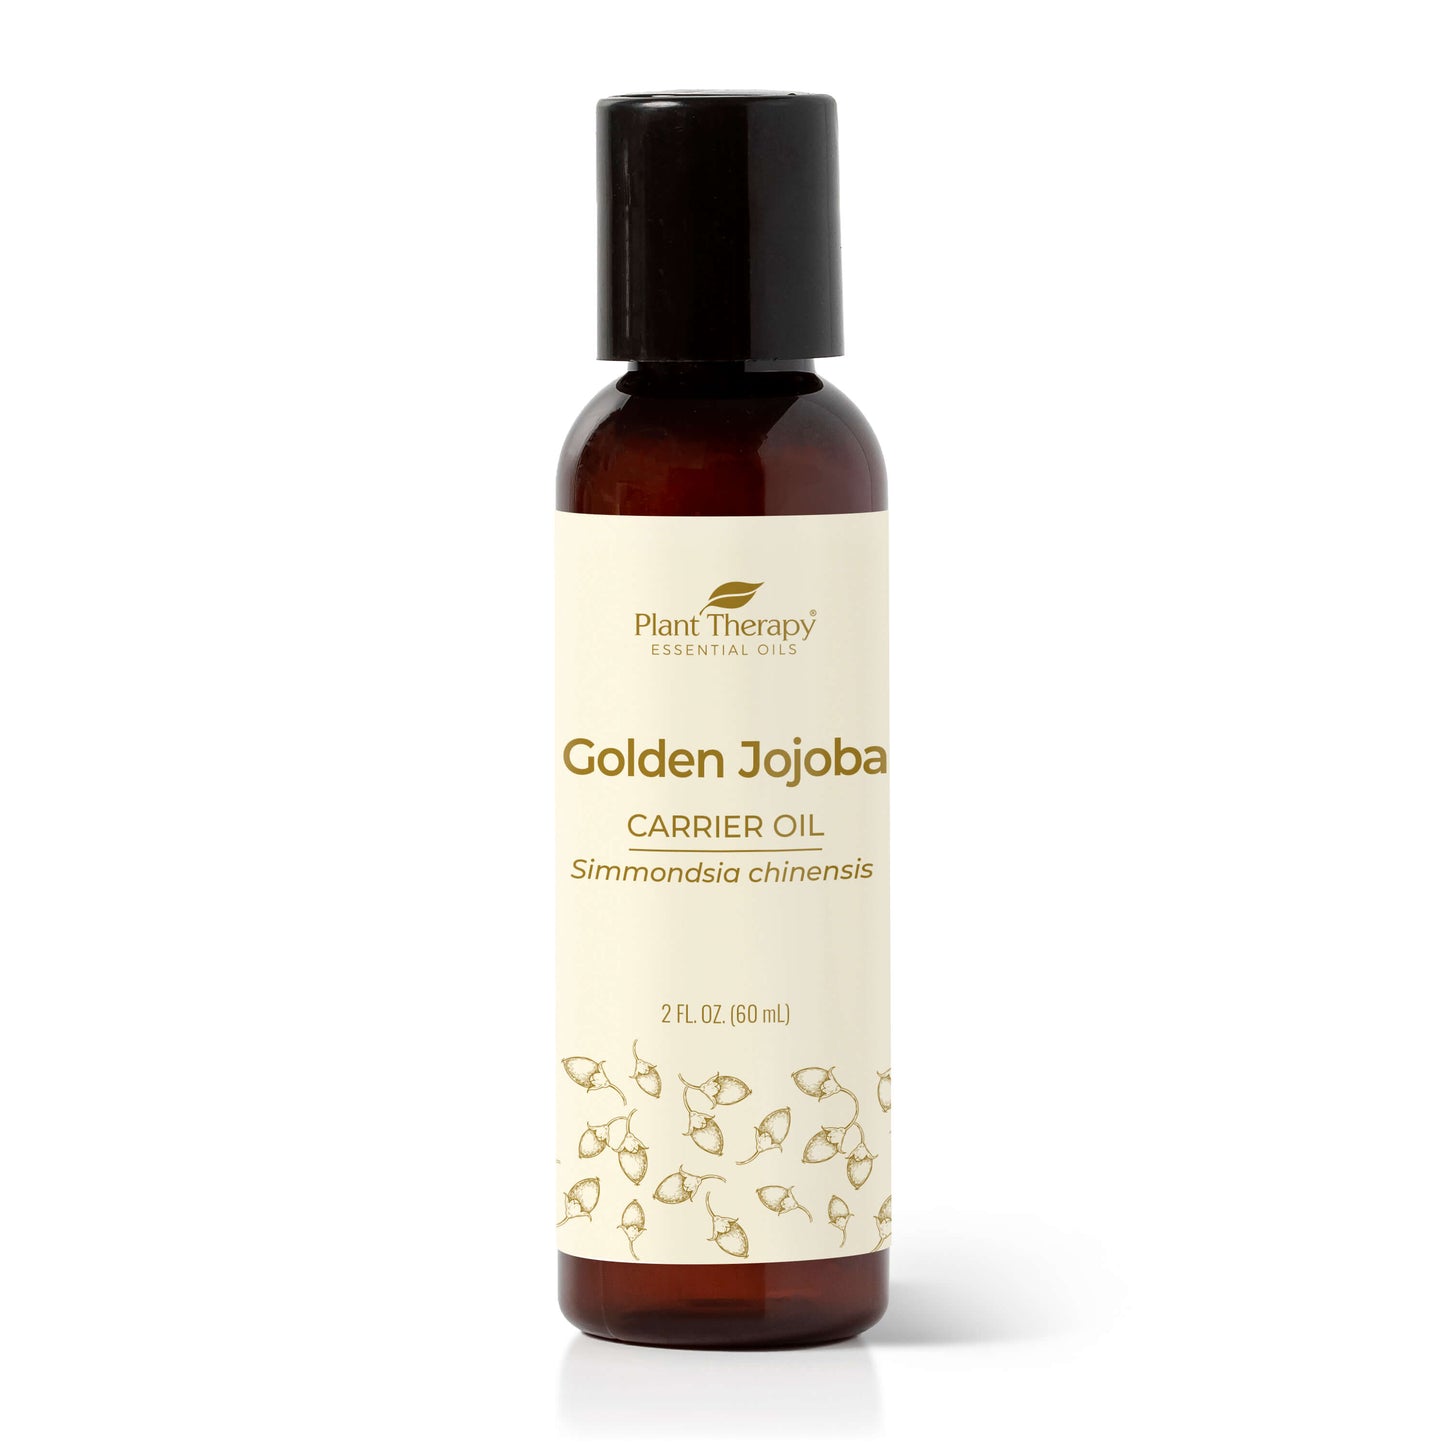 Golden jojoba carrier oil